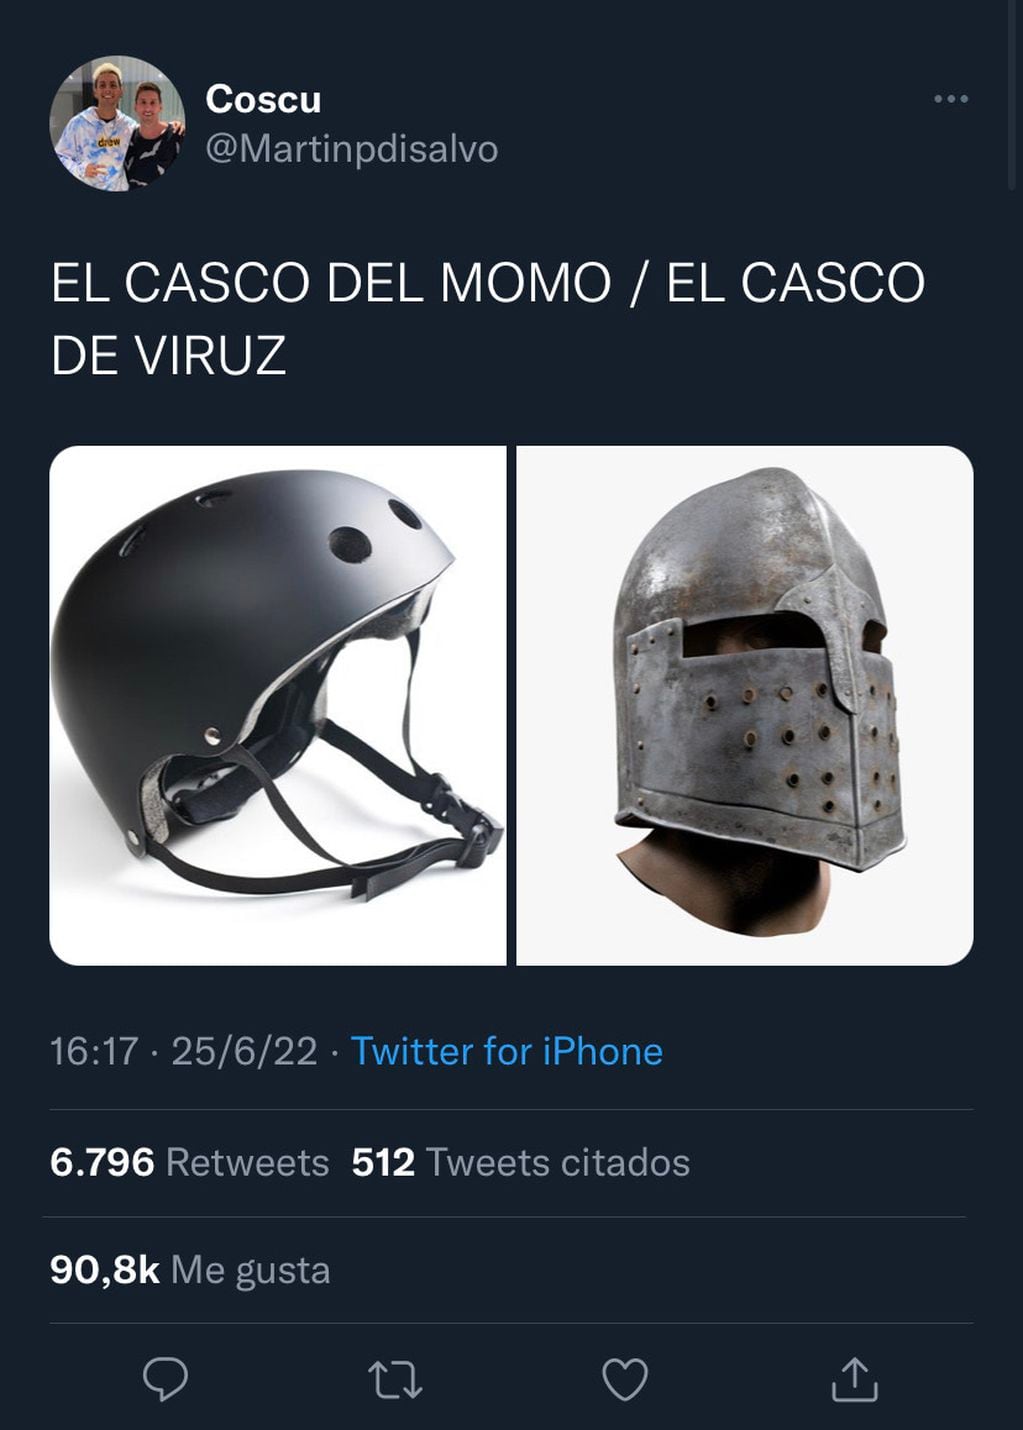 Martín Pérez Di Salvo, más conocido como Coscu, subió una imagen de dos cascos comparándolos con los de los streamers.